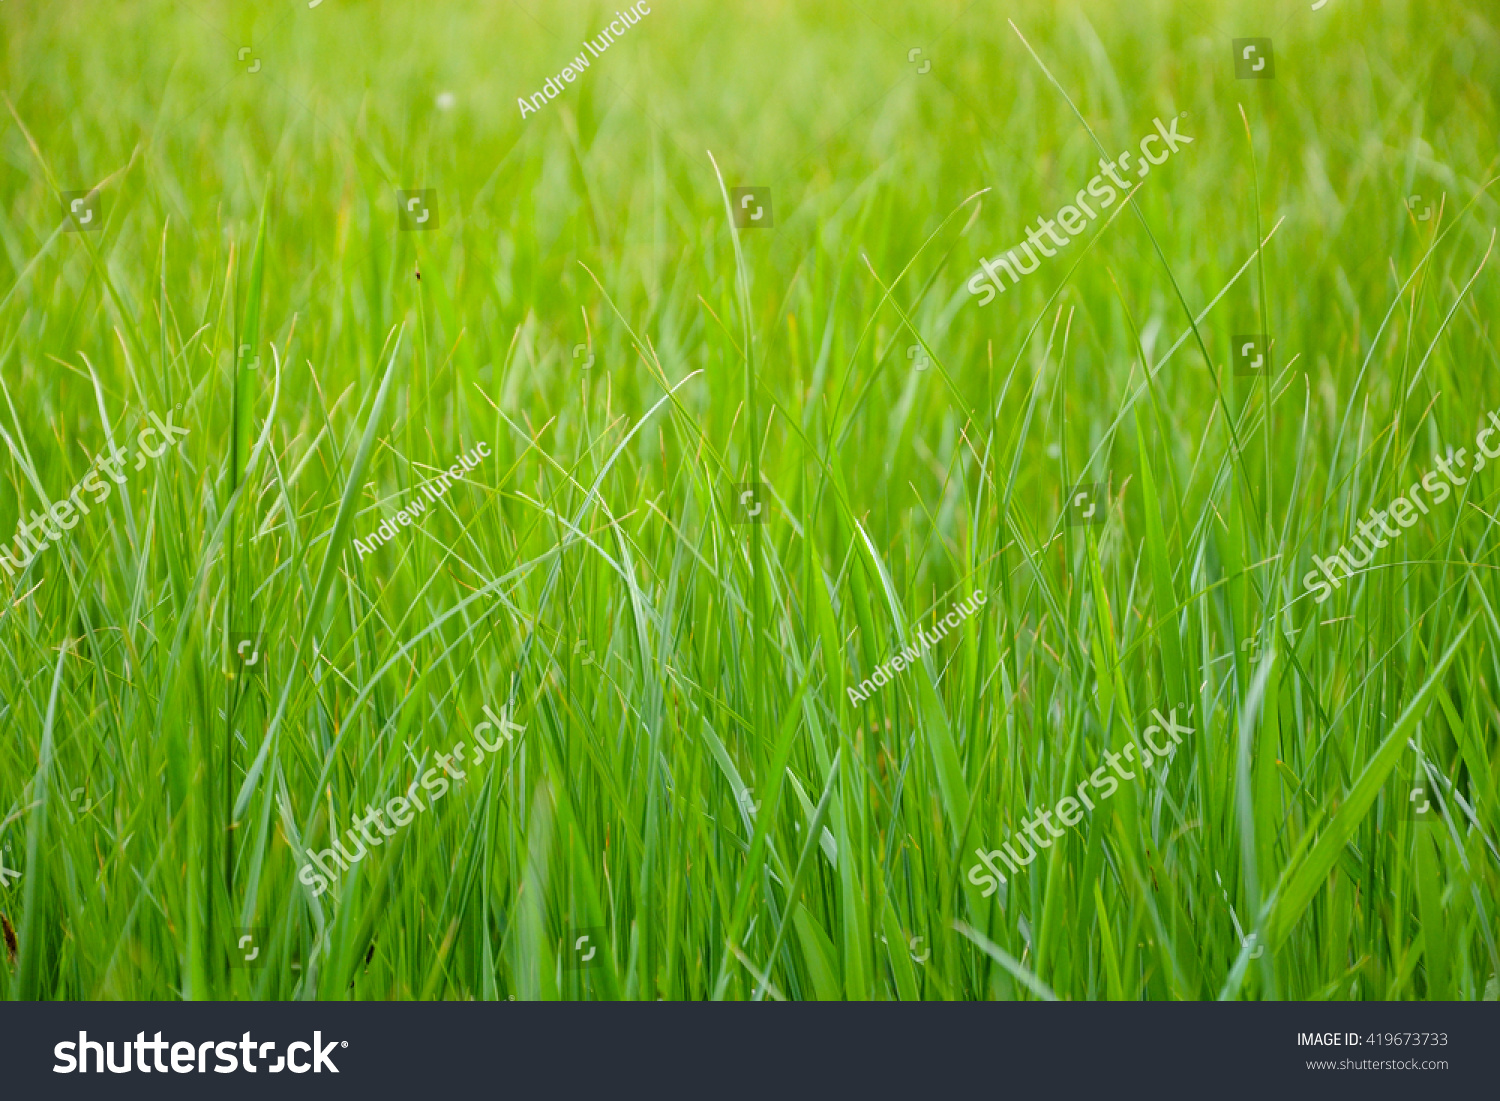 Beautiful grass #419673733